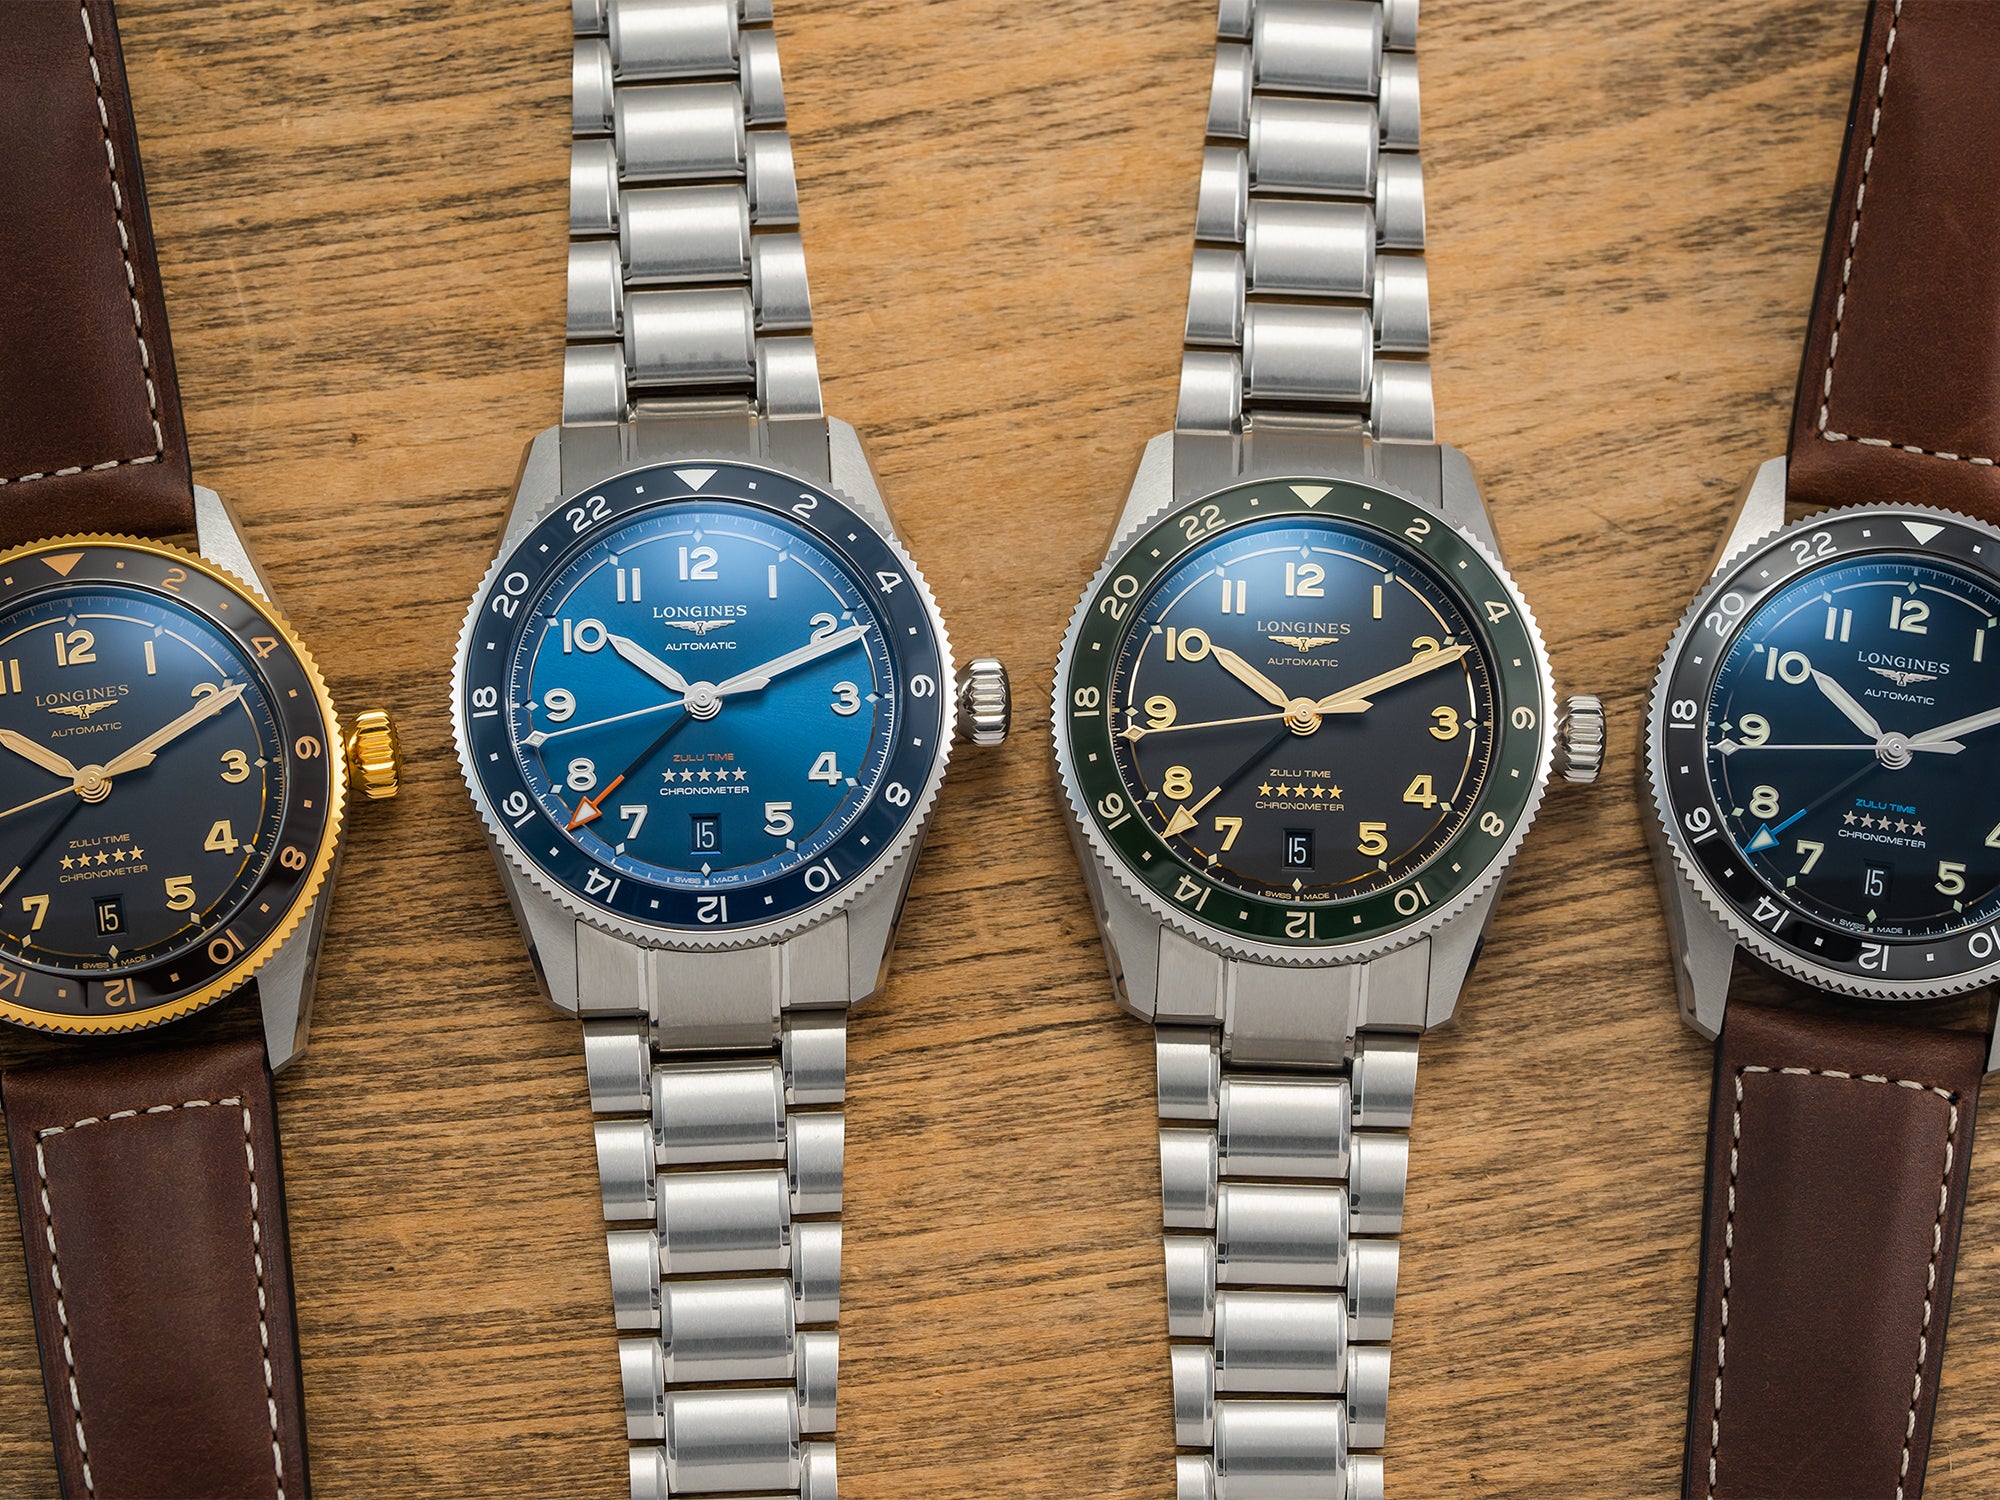 Trintec ZULU-01 CoPilot GMT Aviator Watch | Kickstarter Special! -  KeepTheTime Watches